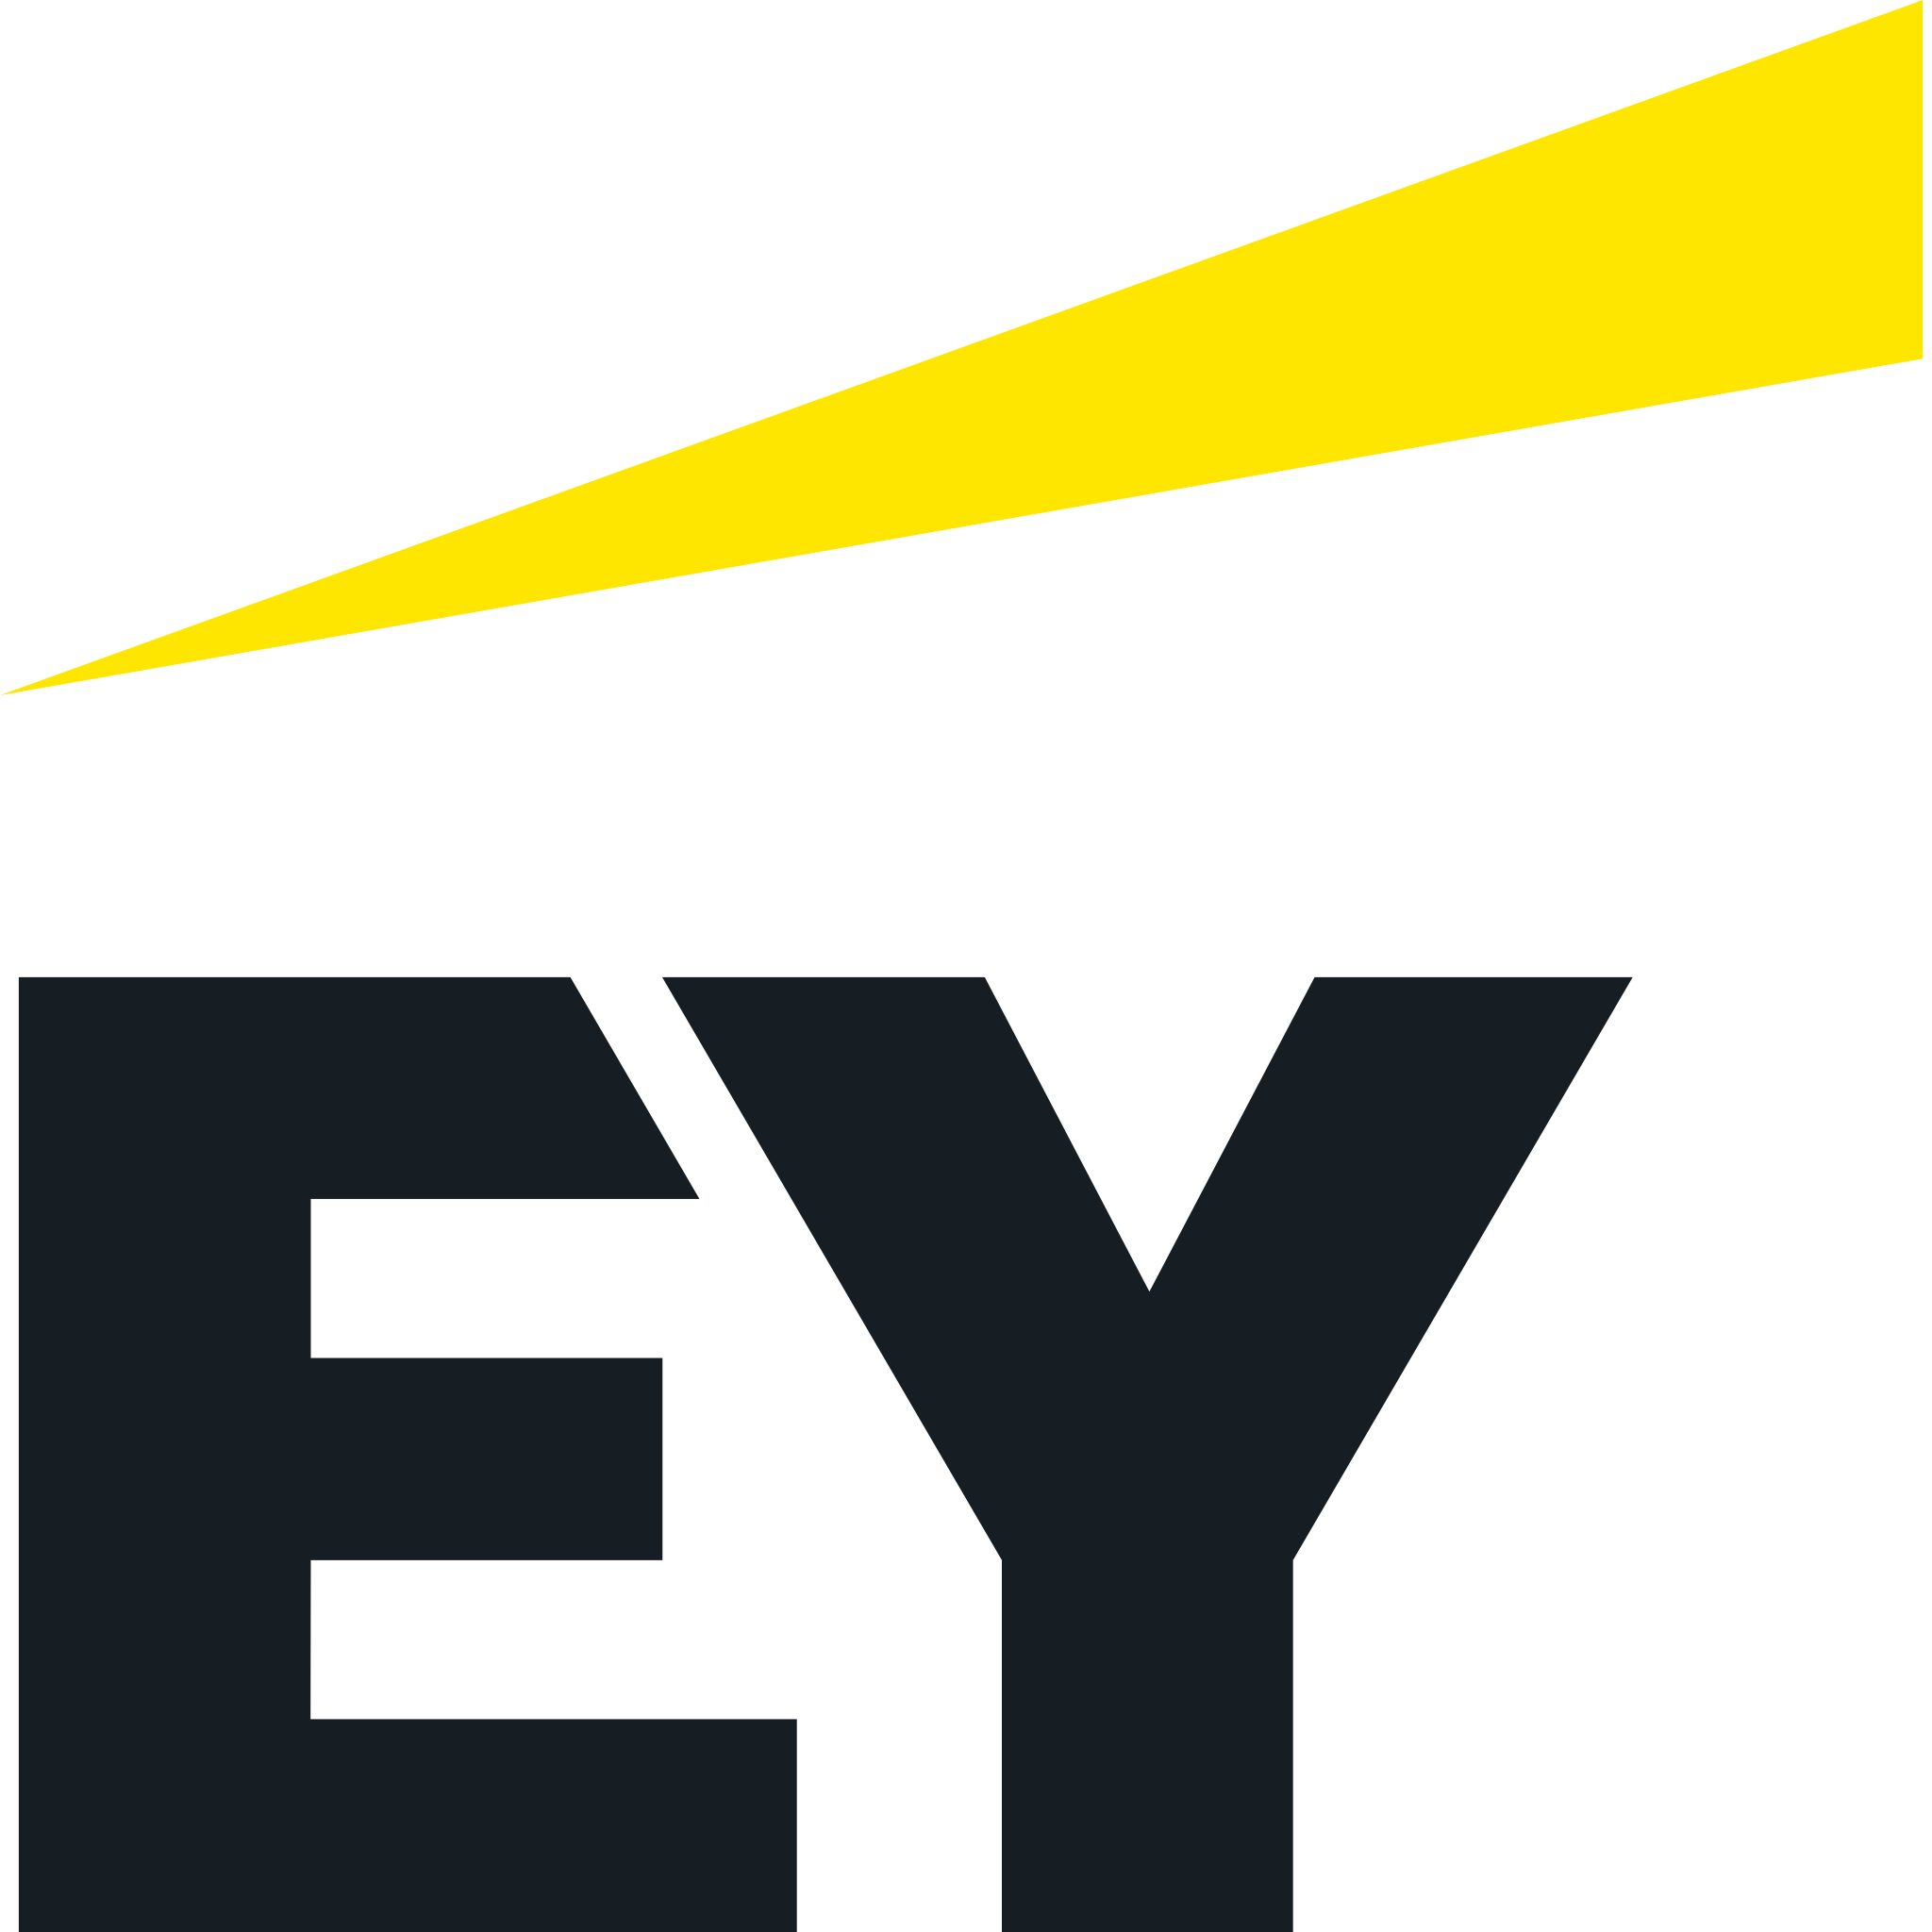 EY_logo_2019.svg.png